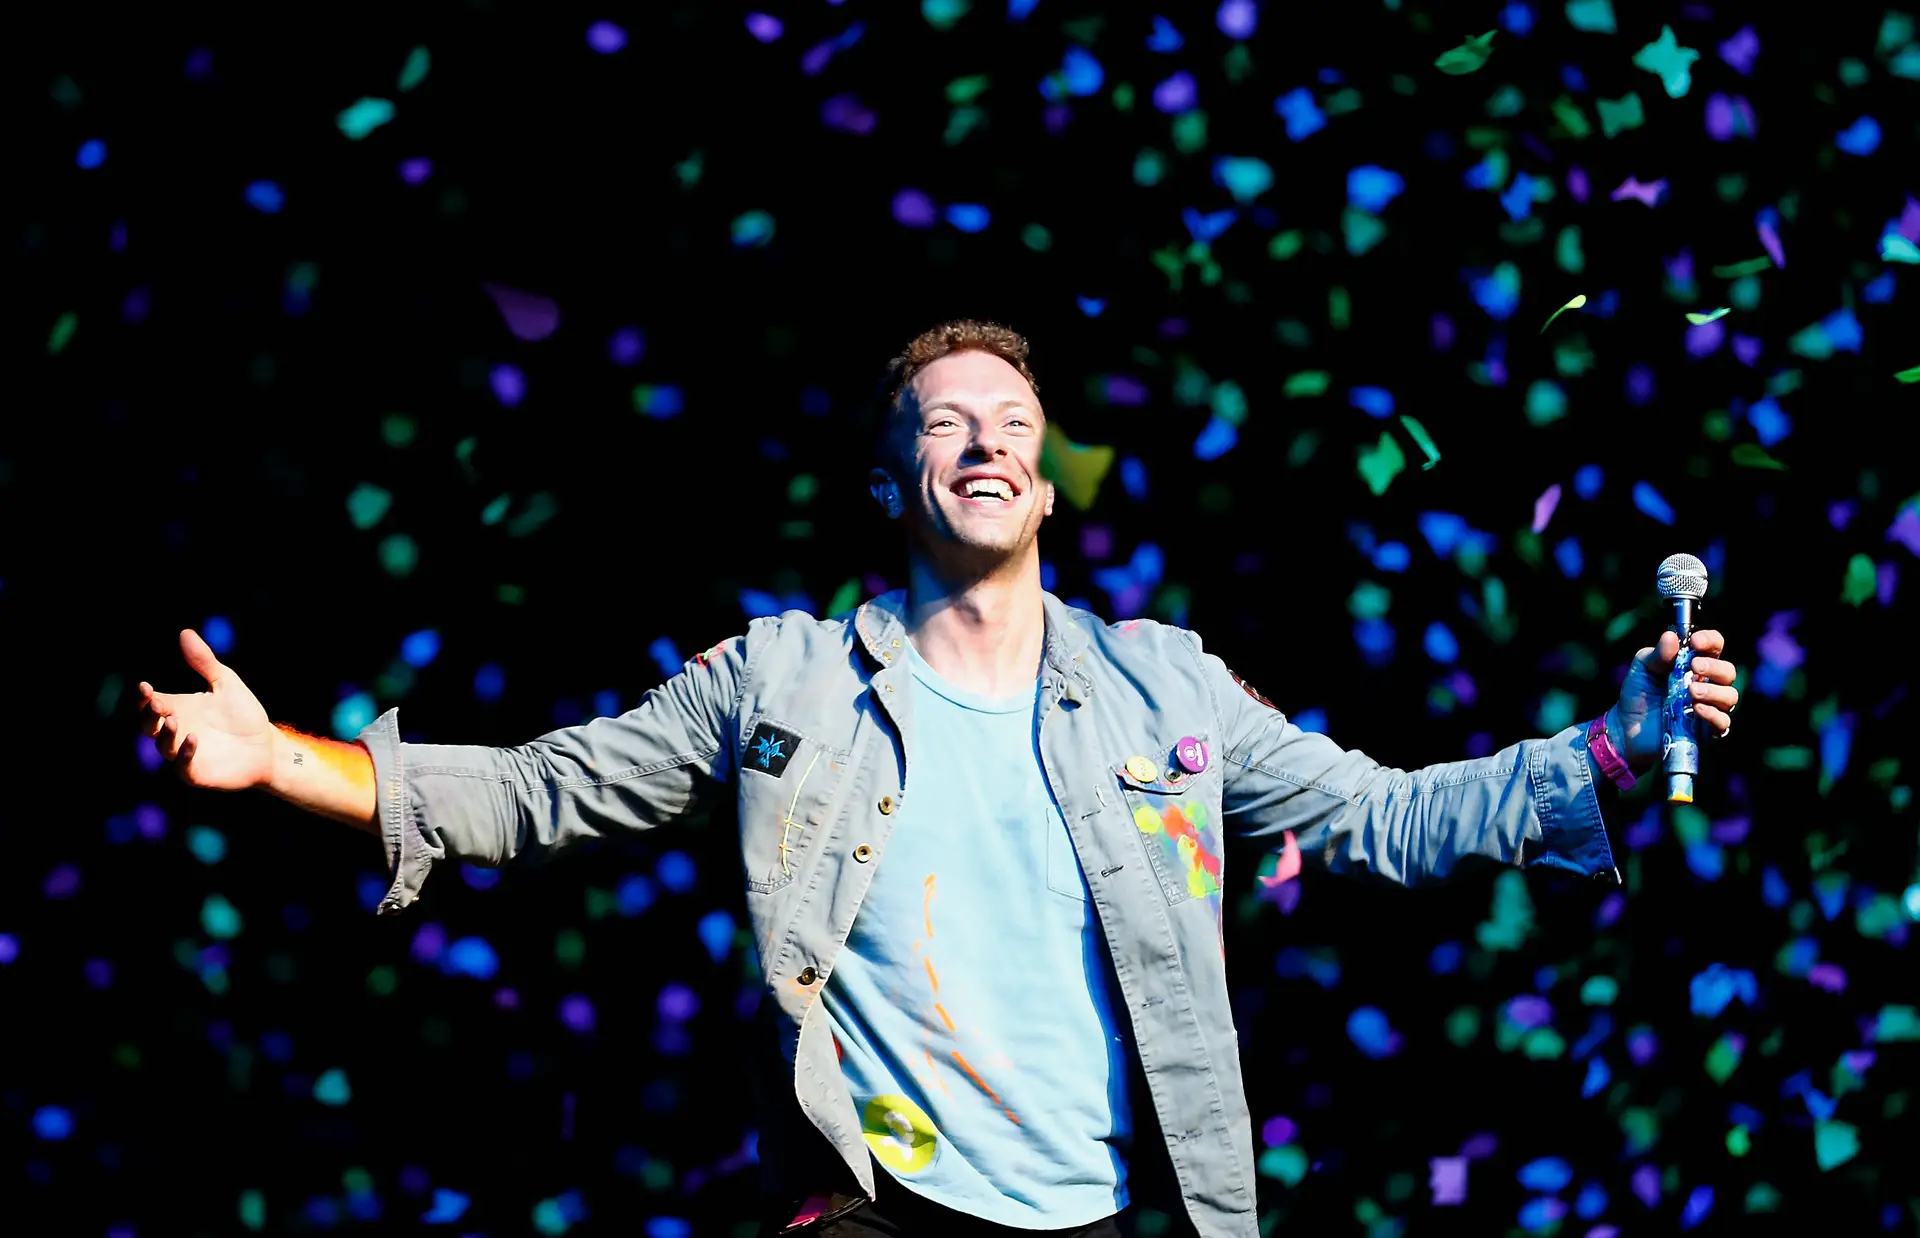 Partido islâmico quer cancelar um concerto dos Coldplay na Malásia: Chris Martin responde